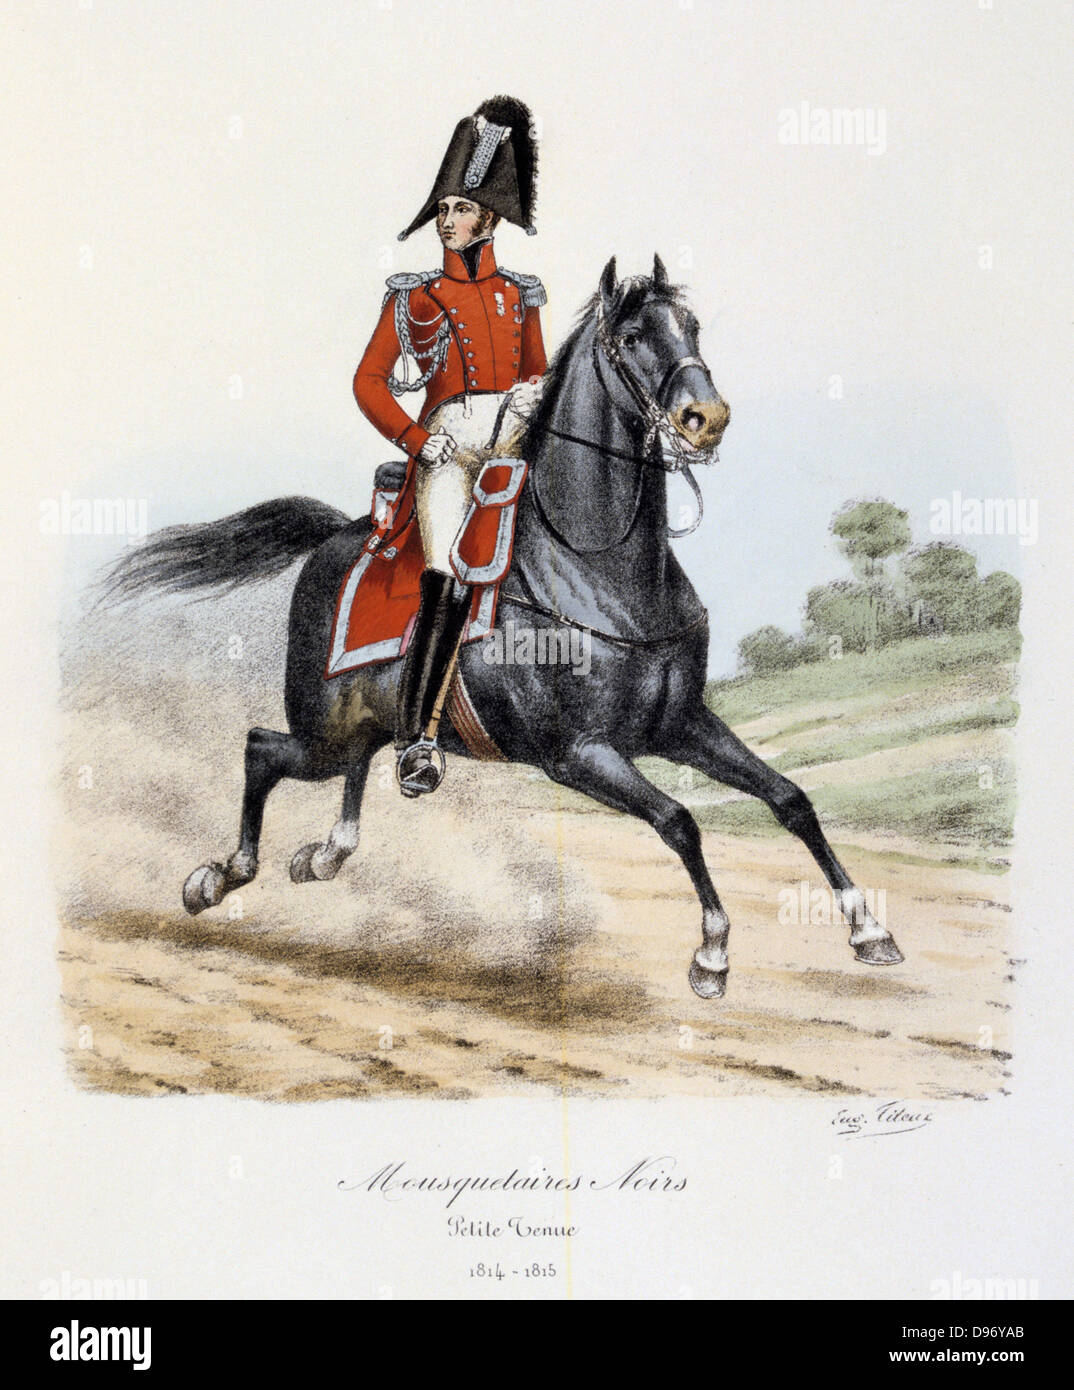 Mounted Black Musketeer, 1814-1815. From 'Histoire de la maison militaire du Roi de 1814 a 1830' by Eugene Titeux, Paris, 1890. Stock Photo